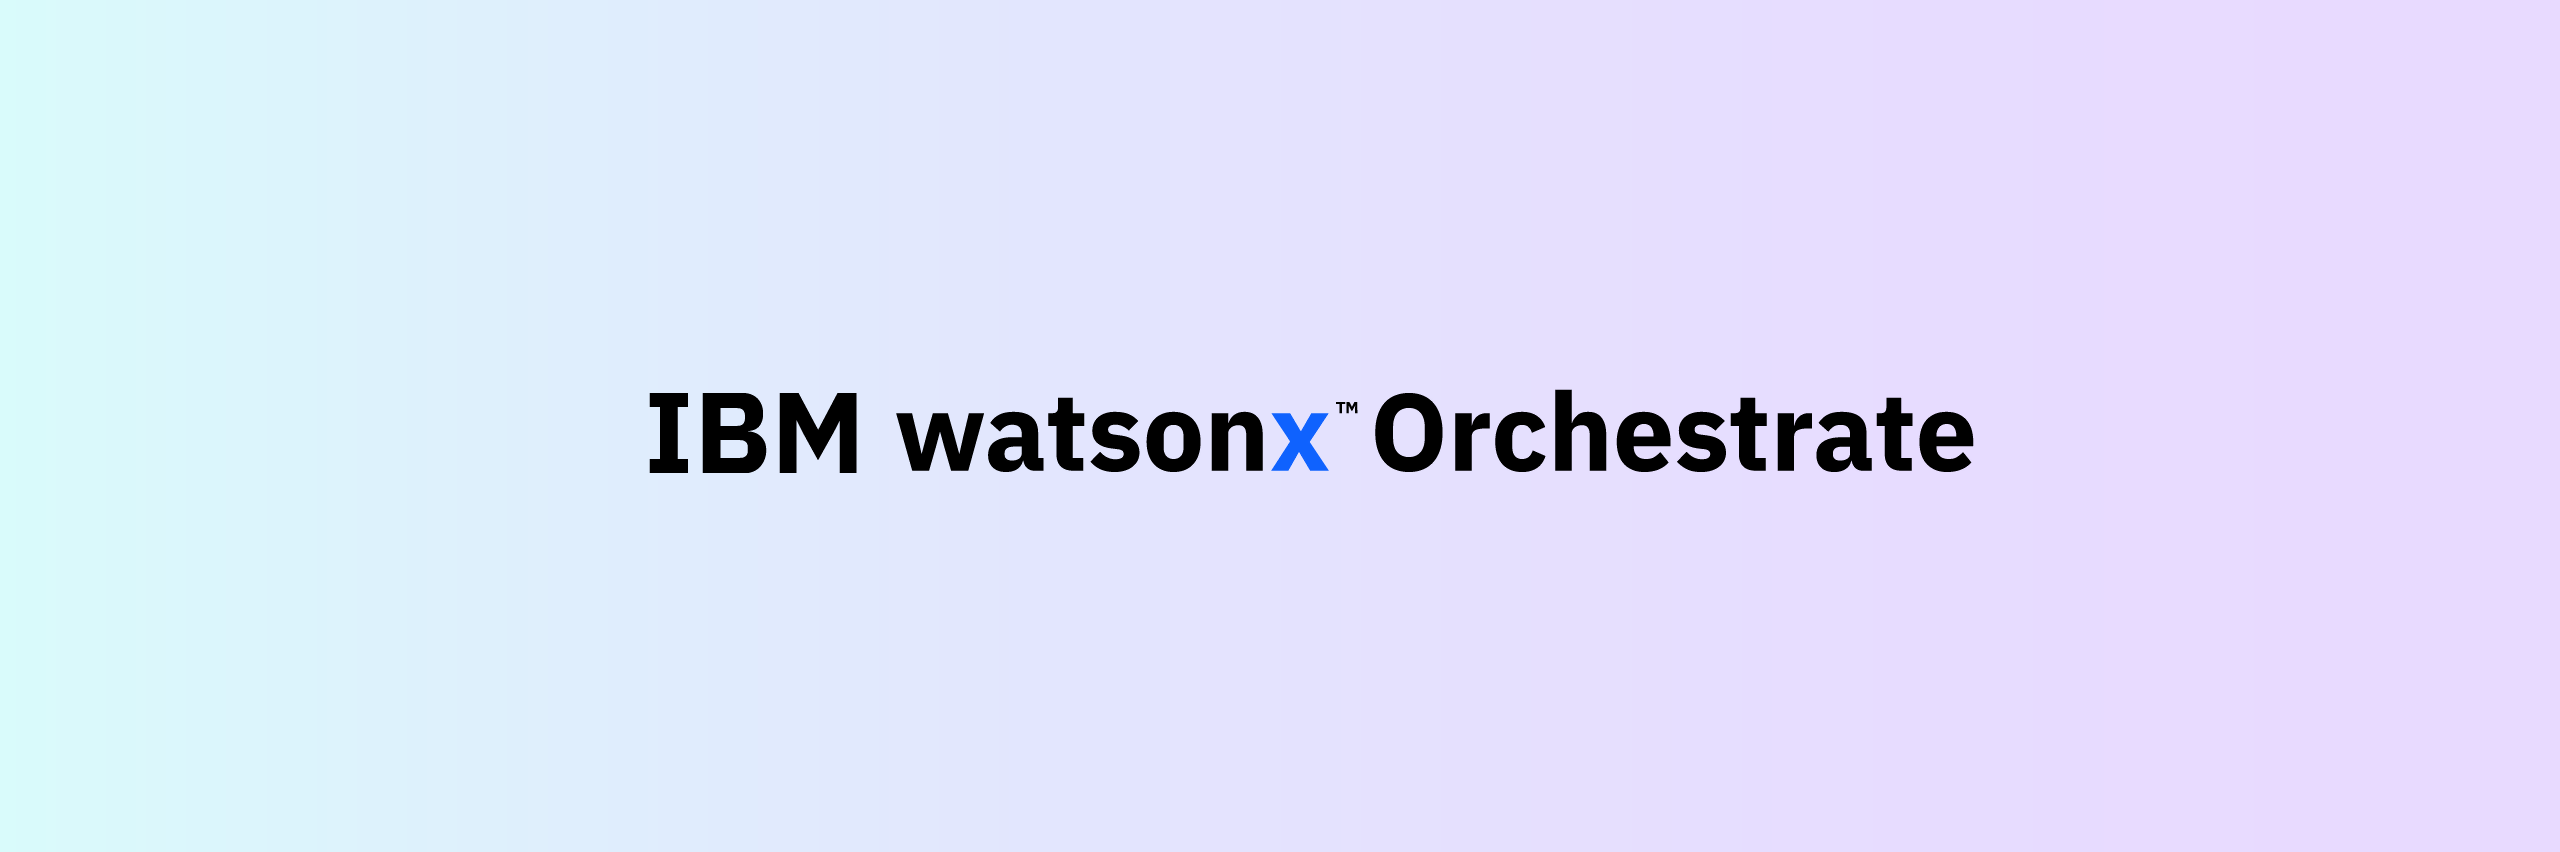 Watsonx Orchestrate